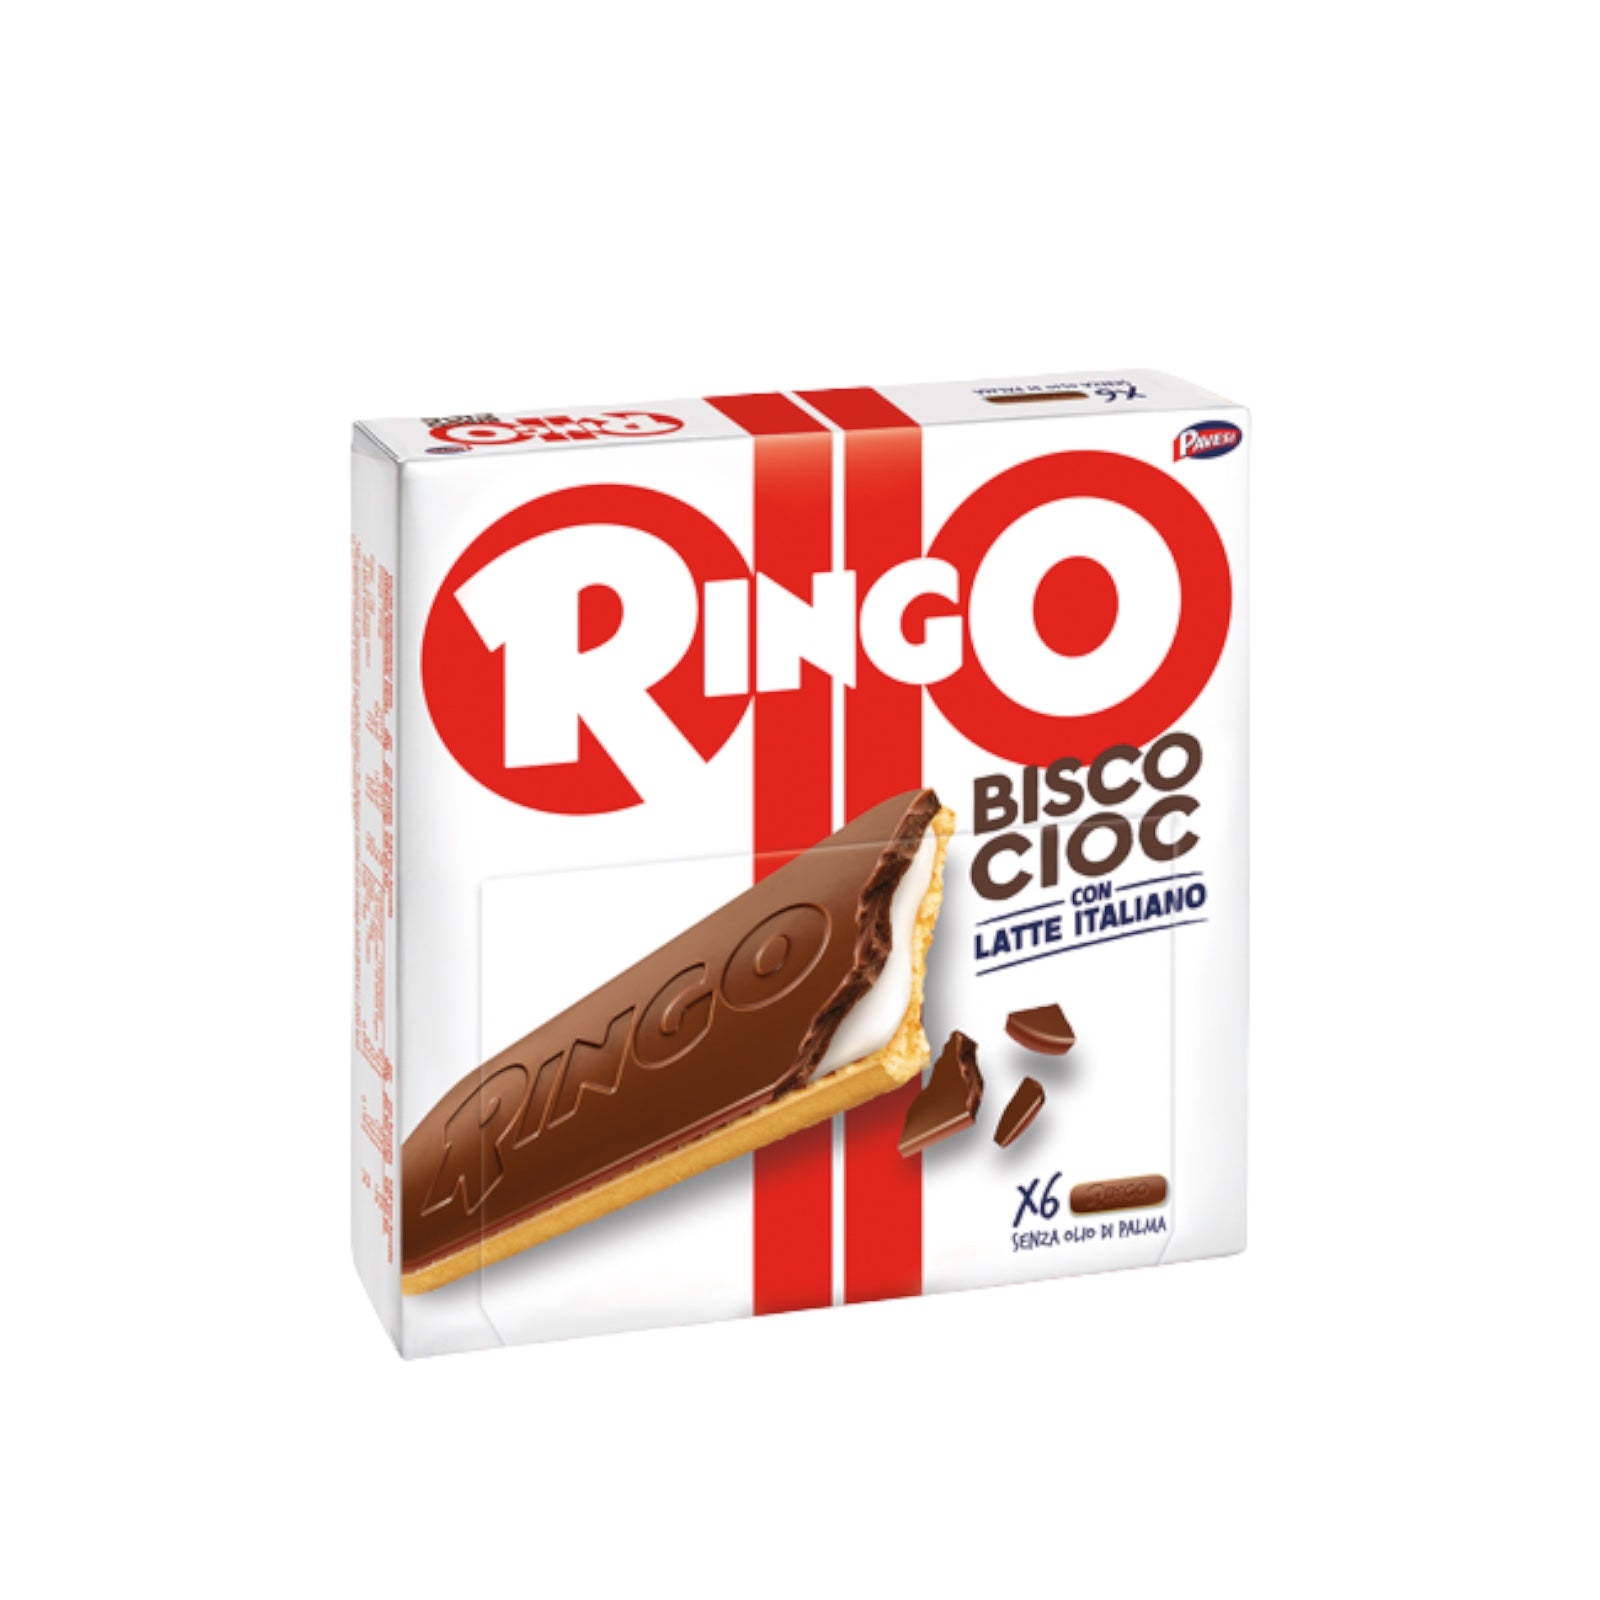 Ringo Bisco Cioc, With Milk Cream – Made In Eatalia